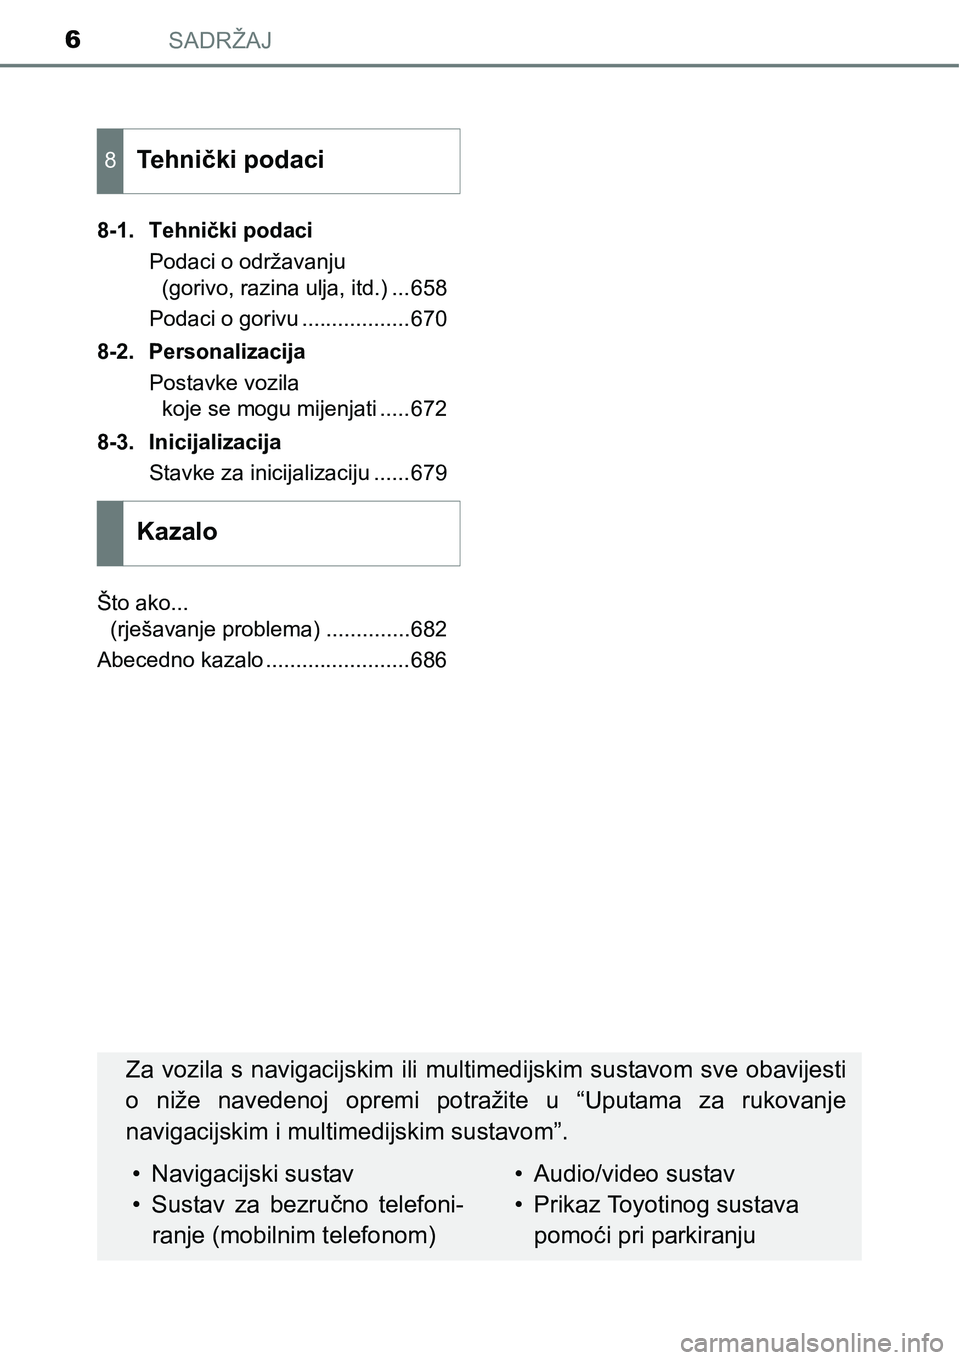 TOYOTA PRIUS 2016  Upute Za Rukovanje (in Croatian) SADRŽAJ6
8-1. Tehnički podaci
Podaci o održavanju 
(gorivo, razina ulja, itd.) ...658
Podaci o gorivu ..................670
8-2. Personalizacija
Postavke vozila 
koje se mogu mijenjati .....672
8-3